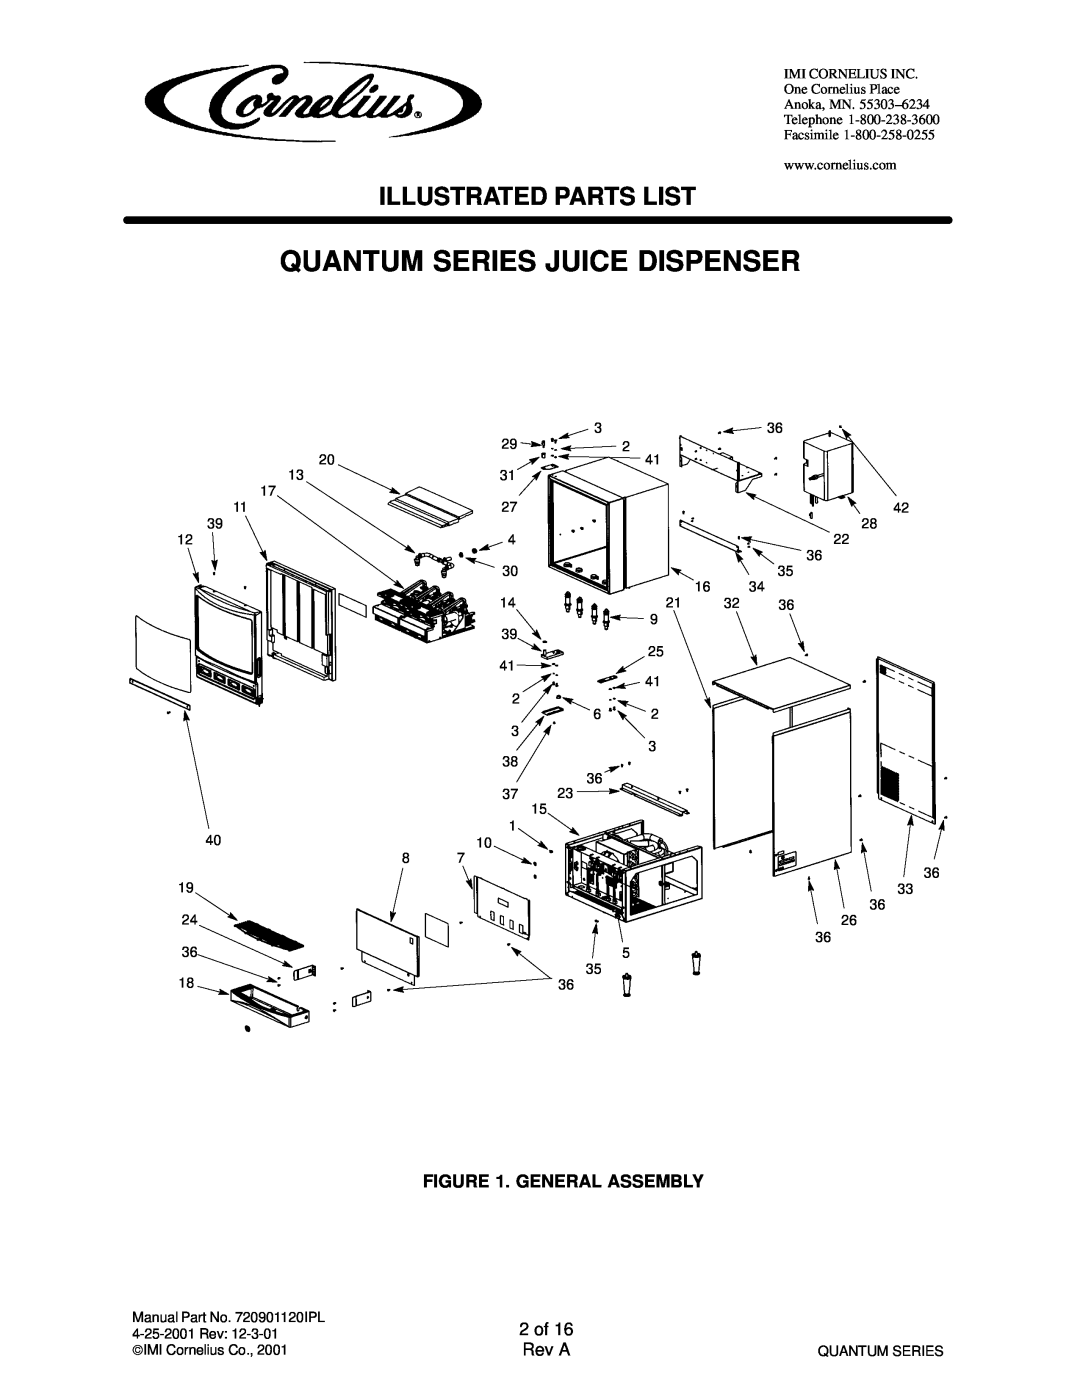 Cornelius QUANTUM SERIES service manual Quantum Series Juice Dispenser, Illustrated Parts List, General Assembly 